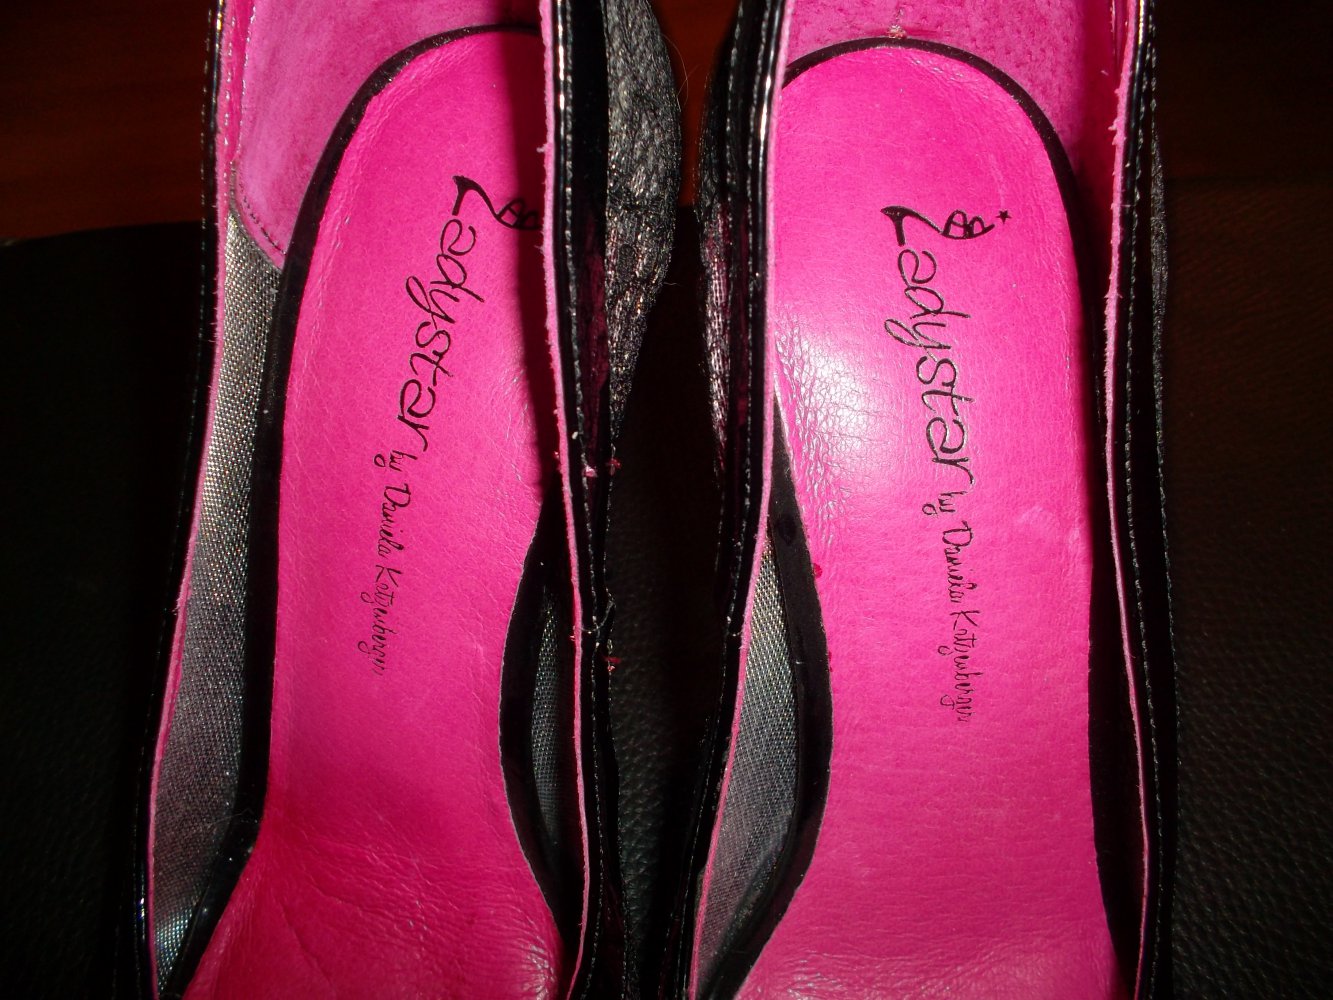 daniela katzenberger,neu,high heels,grösse 37,silber/schwarz/pink